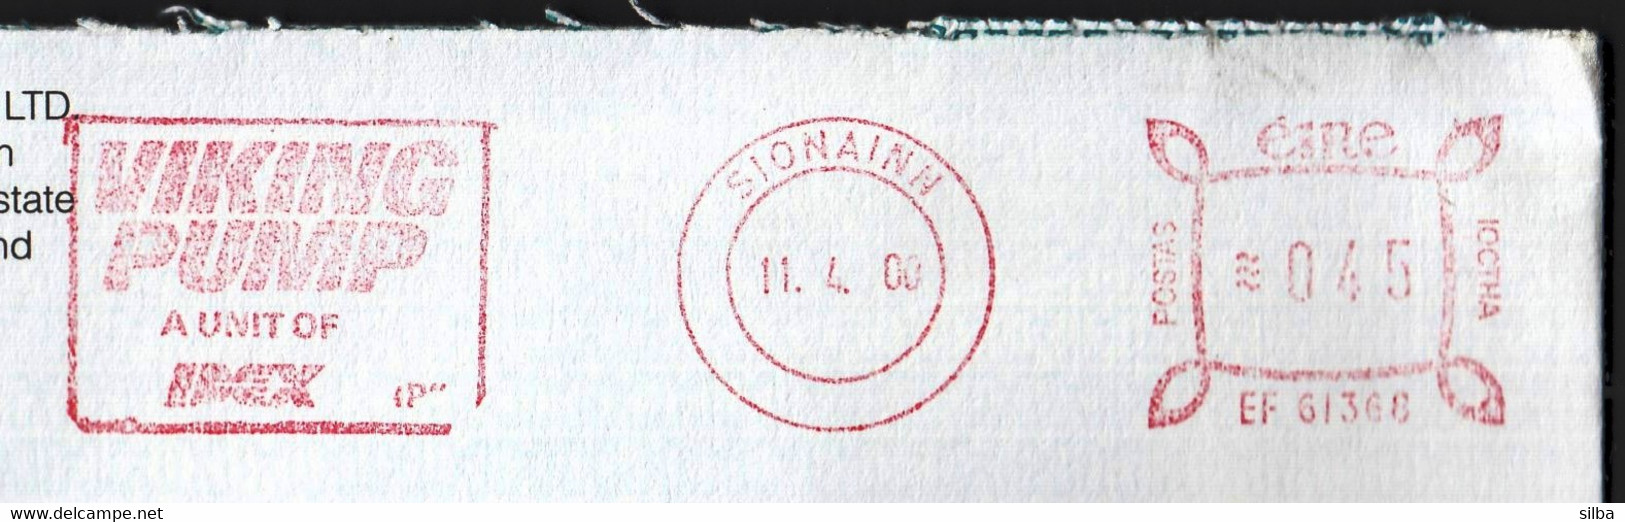 Ireland Sionainn 2000 / VIKING PUMP / Machine Stamp ATM EMA / Achema 2000 Vignette - Viñetas De Franqueo (Frama)